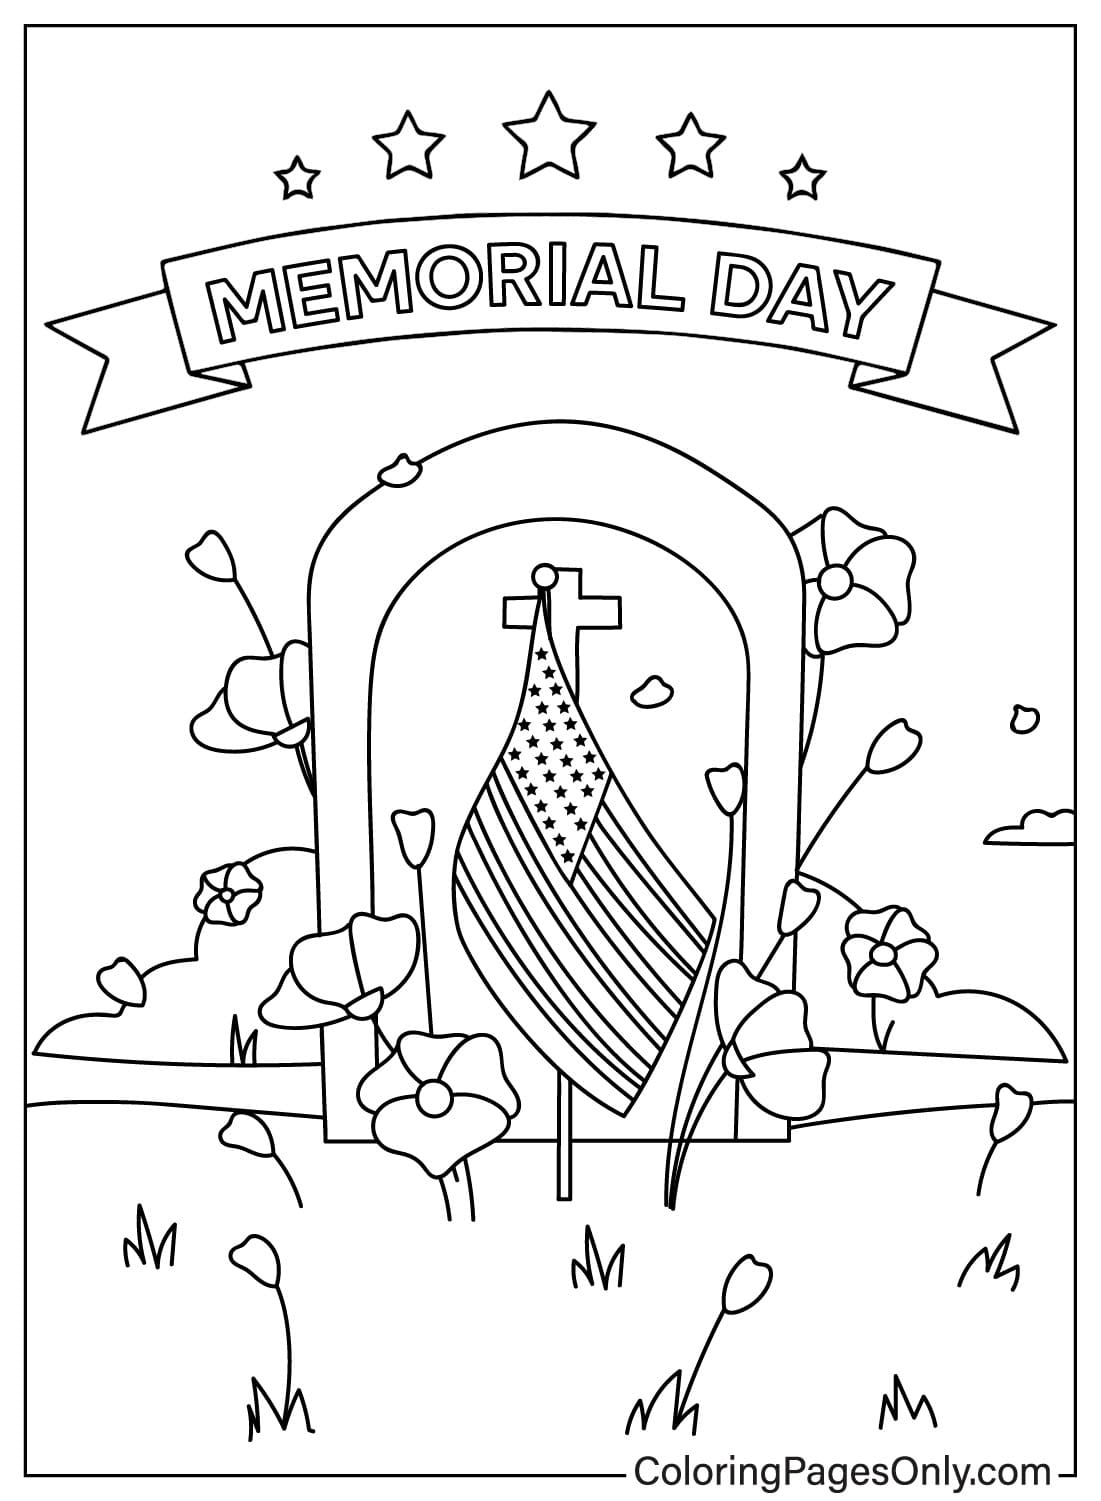 Jour commémoratif des États-Unis du Memorial Day